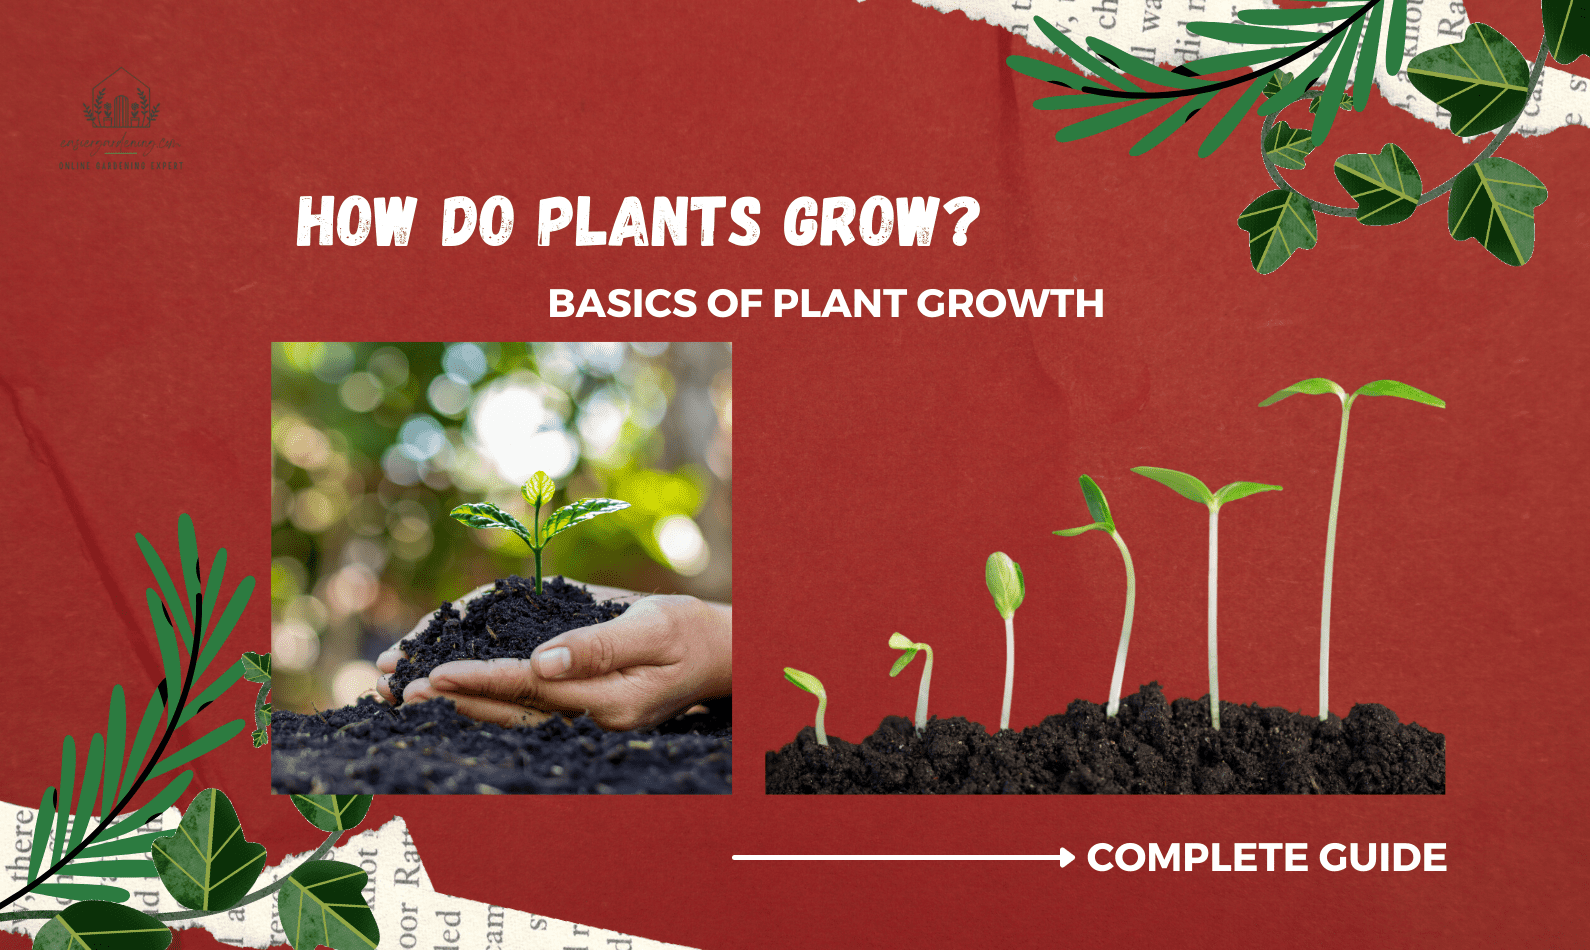 How do Plants Grow?